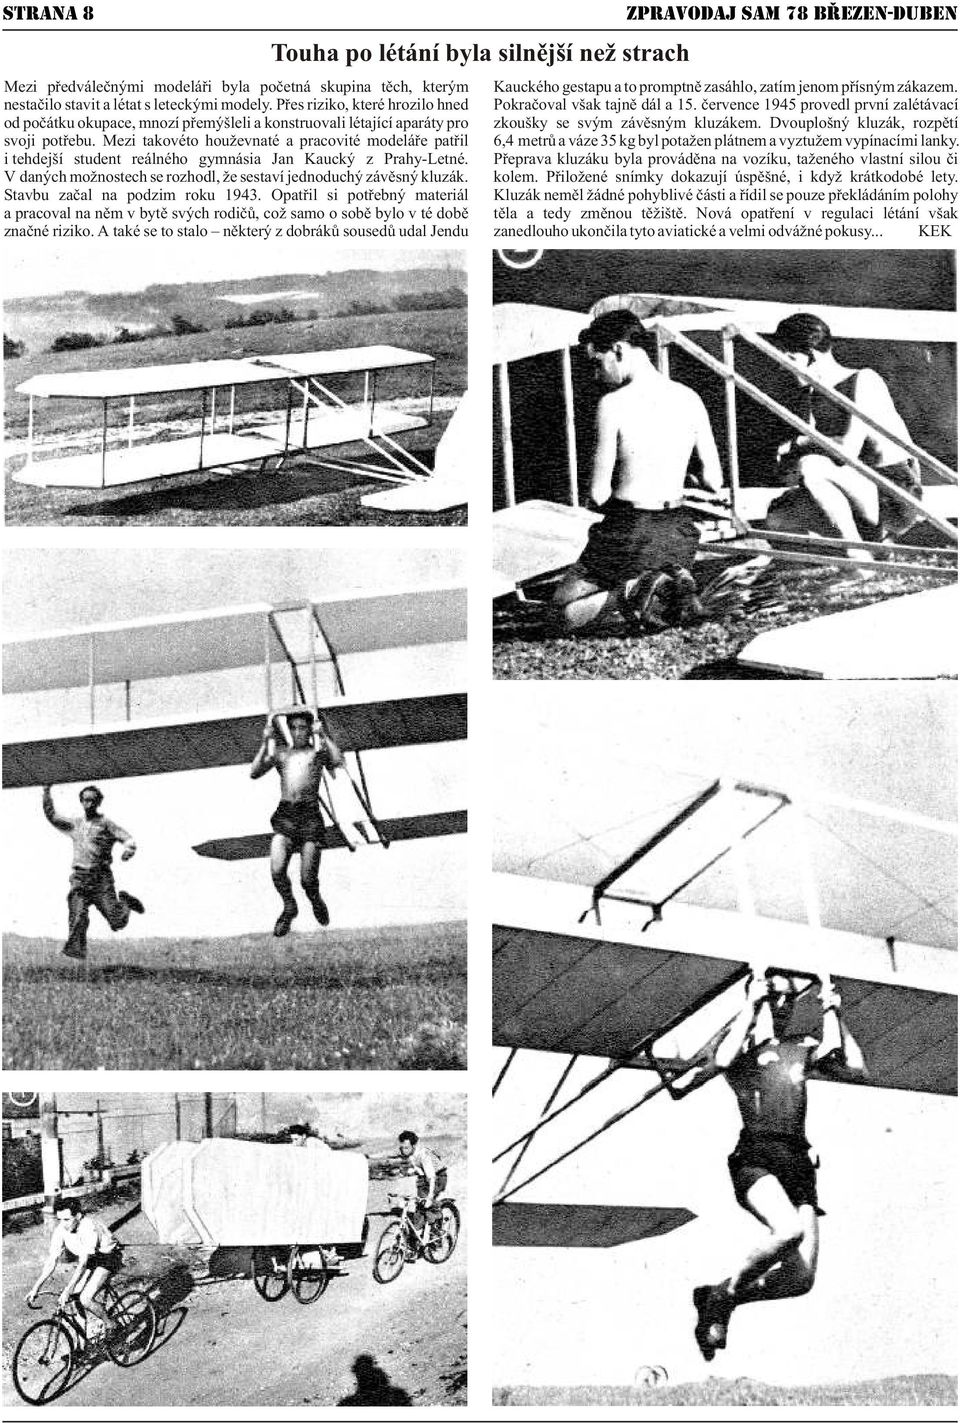 èervence 1945 provedl první zalétávací od poèátku okupace, mnozí pøemýšleli a konstruovali létající aparáty pro zkoušky se svým závìsným kluzákem. Dvouplošný kluzák, rozpìtí svoji potøebu.